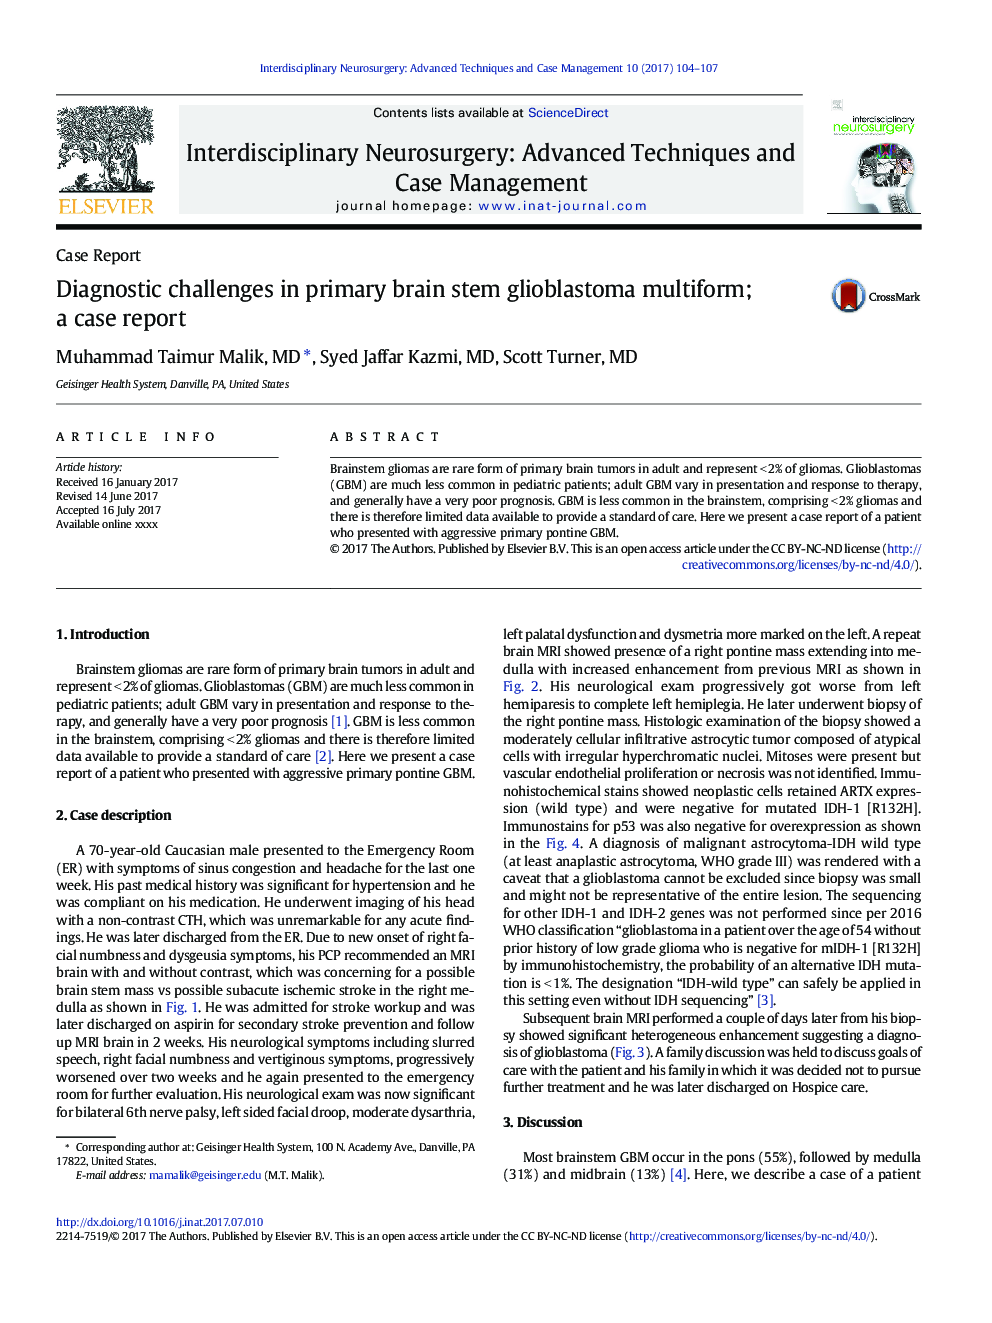 Case ReportDiagnostic challenges in primary brain stem glioblastoma multiform; a case report